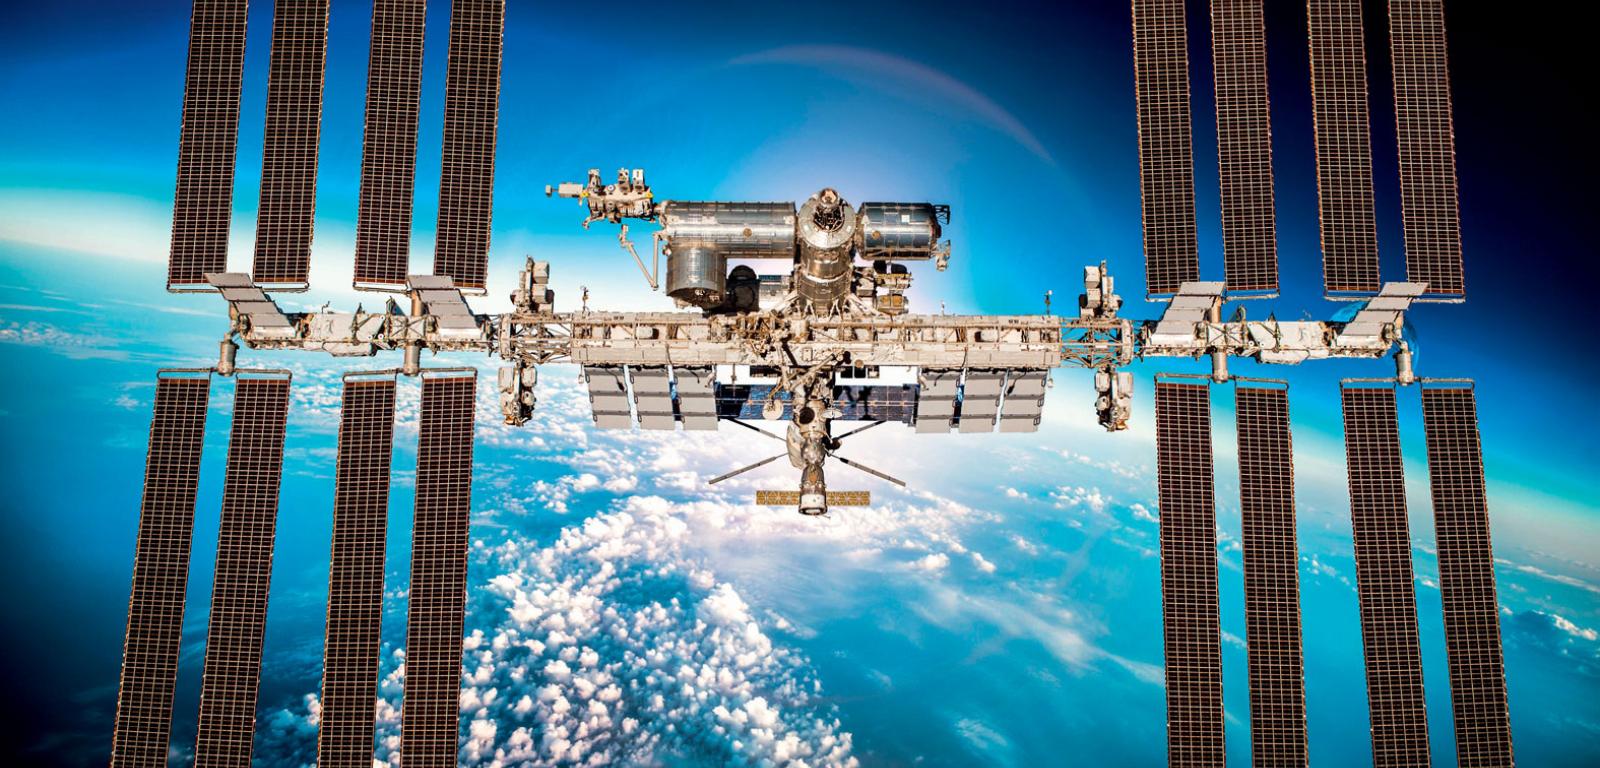 Międzynarodowa Stacja Kosmiczna (ISS) okrąża Ziemię co półtorej godziny na wysokości ok. 400 km.